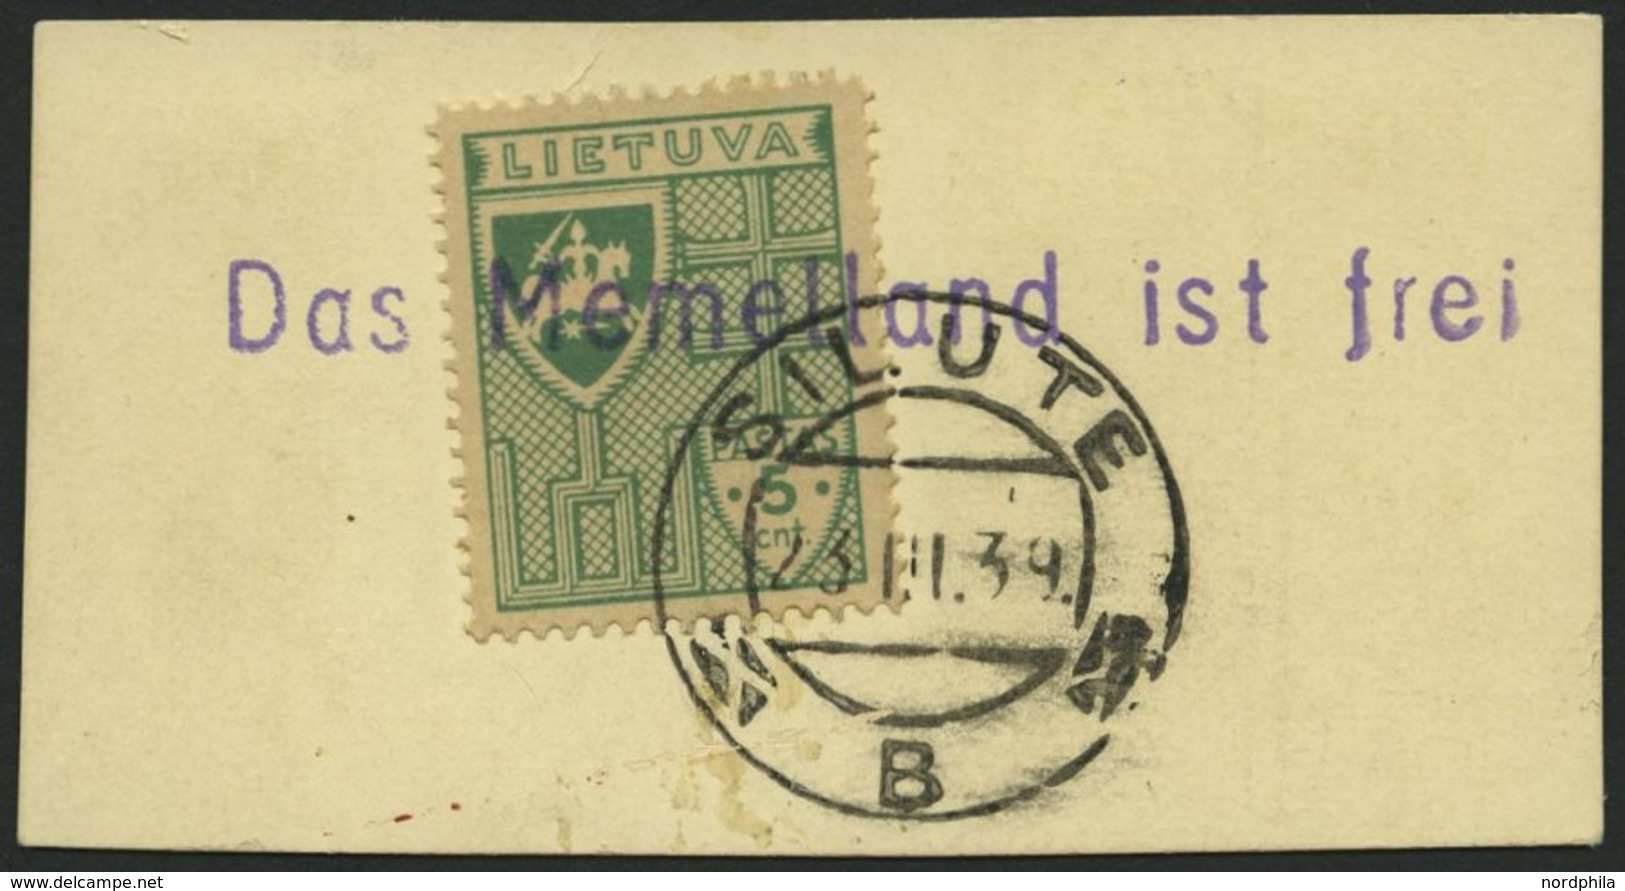 LITAUEN 409 BrfStk, 1939, 5 C. Grün Mit Stempel SILUTE Und Violettem L1 Das Memelland Ist Frei, Prachtbriefstück - Lithuania